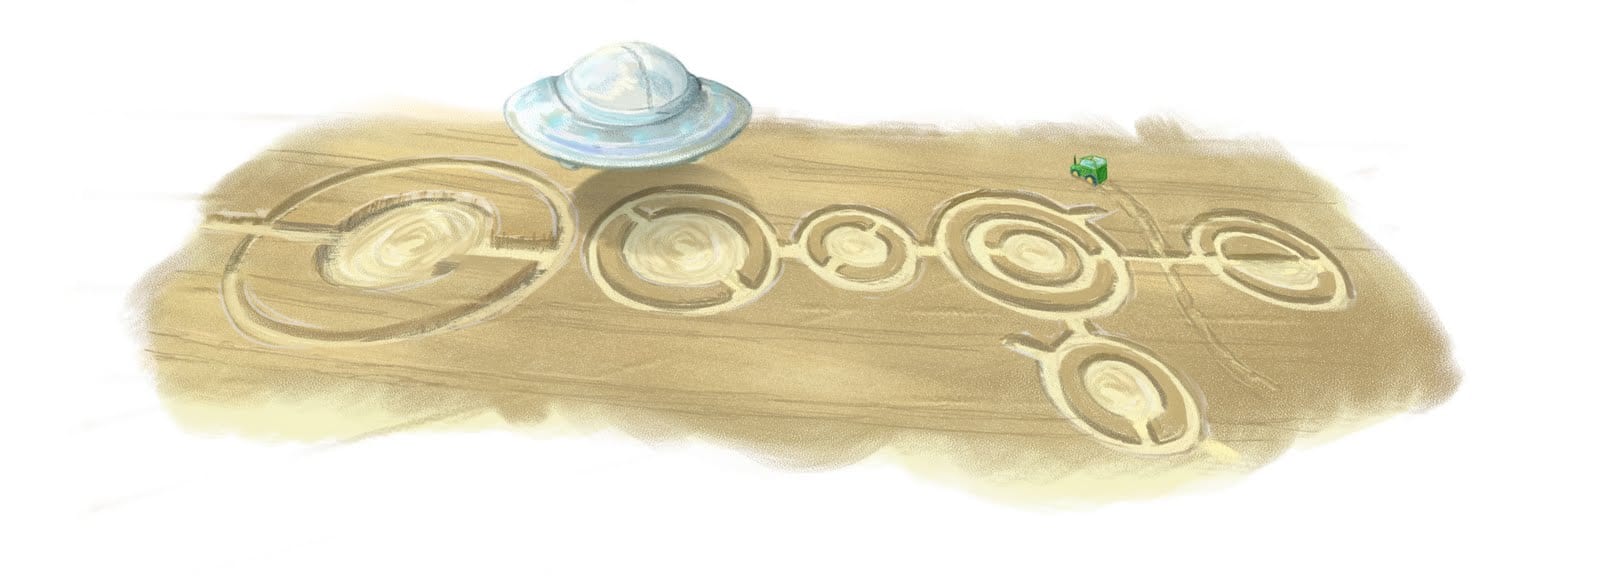 Google celebra el natalicio de H.G. Wells con platillos volantes.